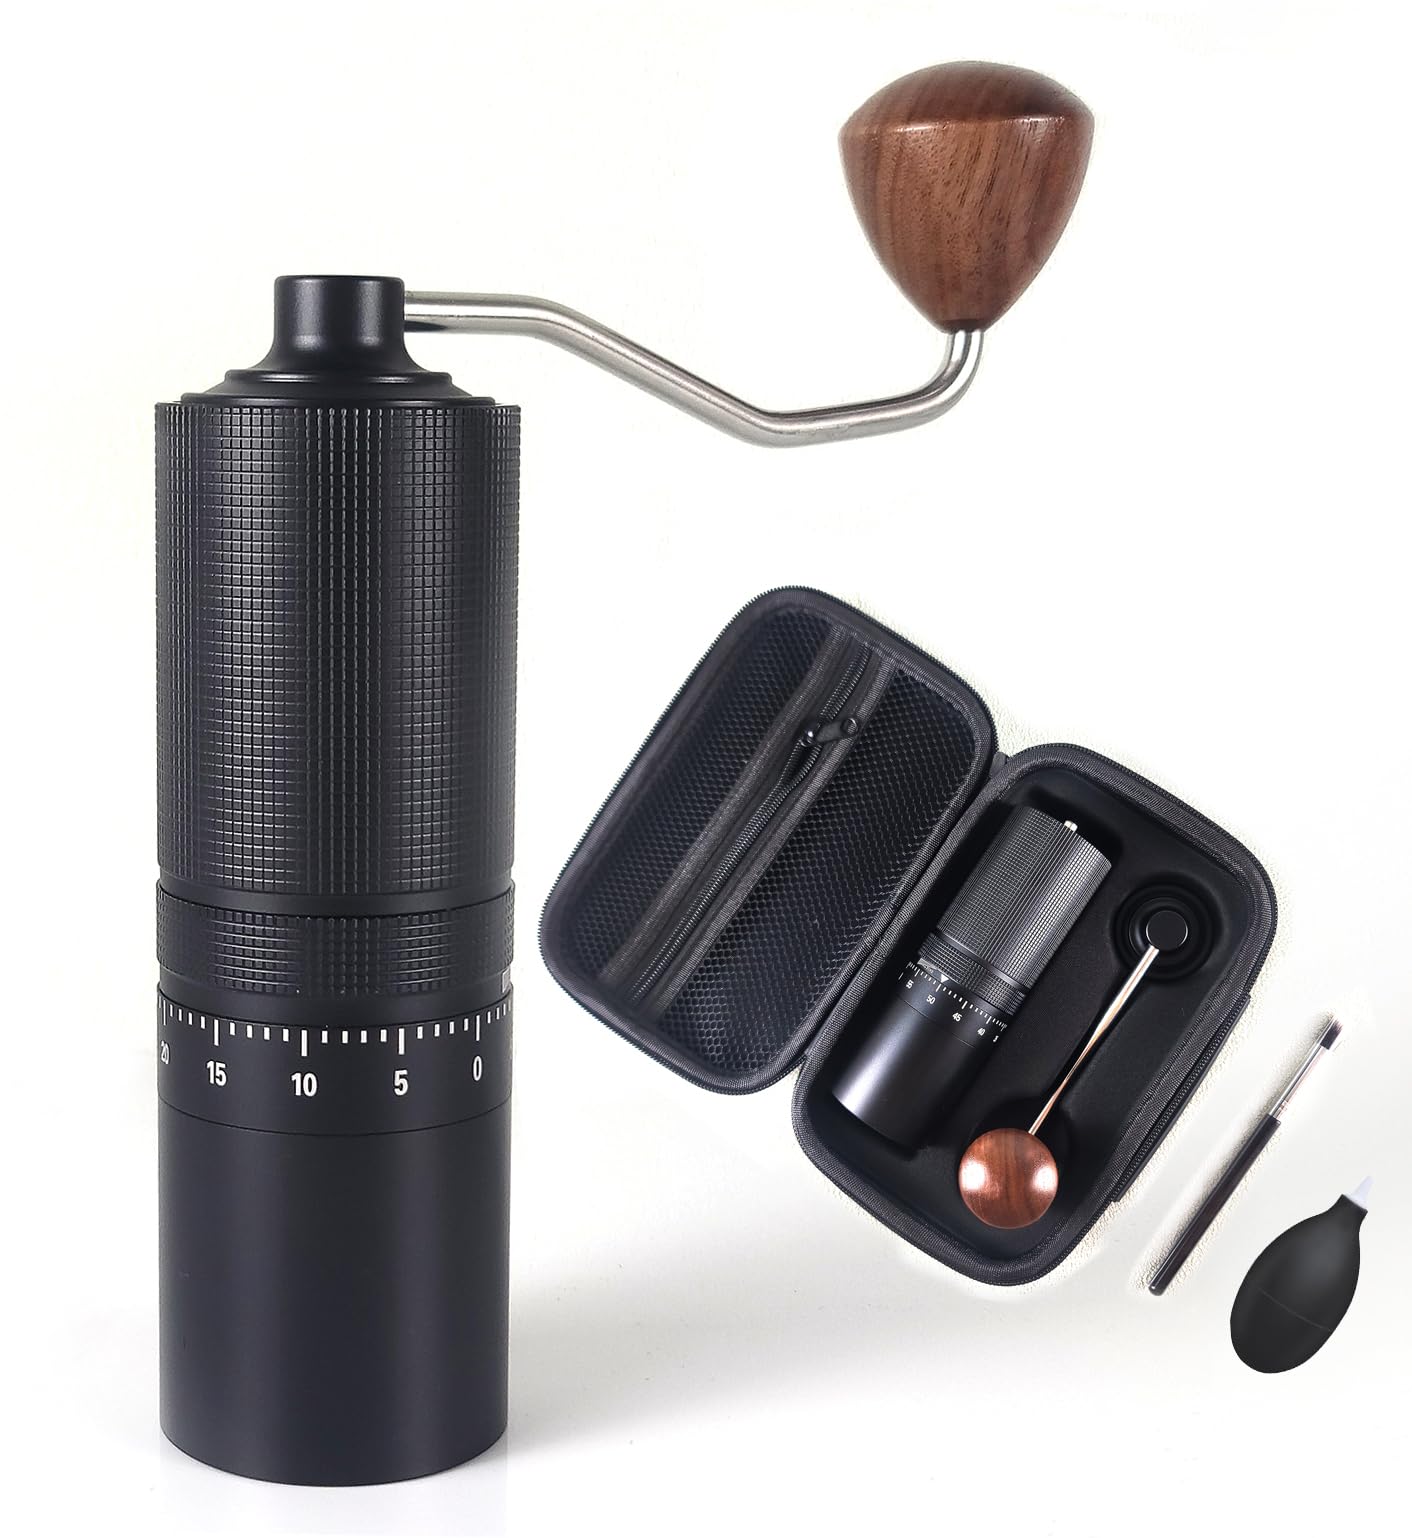 One Bean 手挽きコーヒーミル 無限N2 コーヒーグラインダー 手動式 ハンドミル 七角ステンレス臼 全金属 外部粗さ調整機能 清掃しやすい 携帯便利のバッグ付き 省力均一 coffee grinder (無限N2-ブラック)